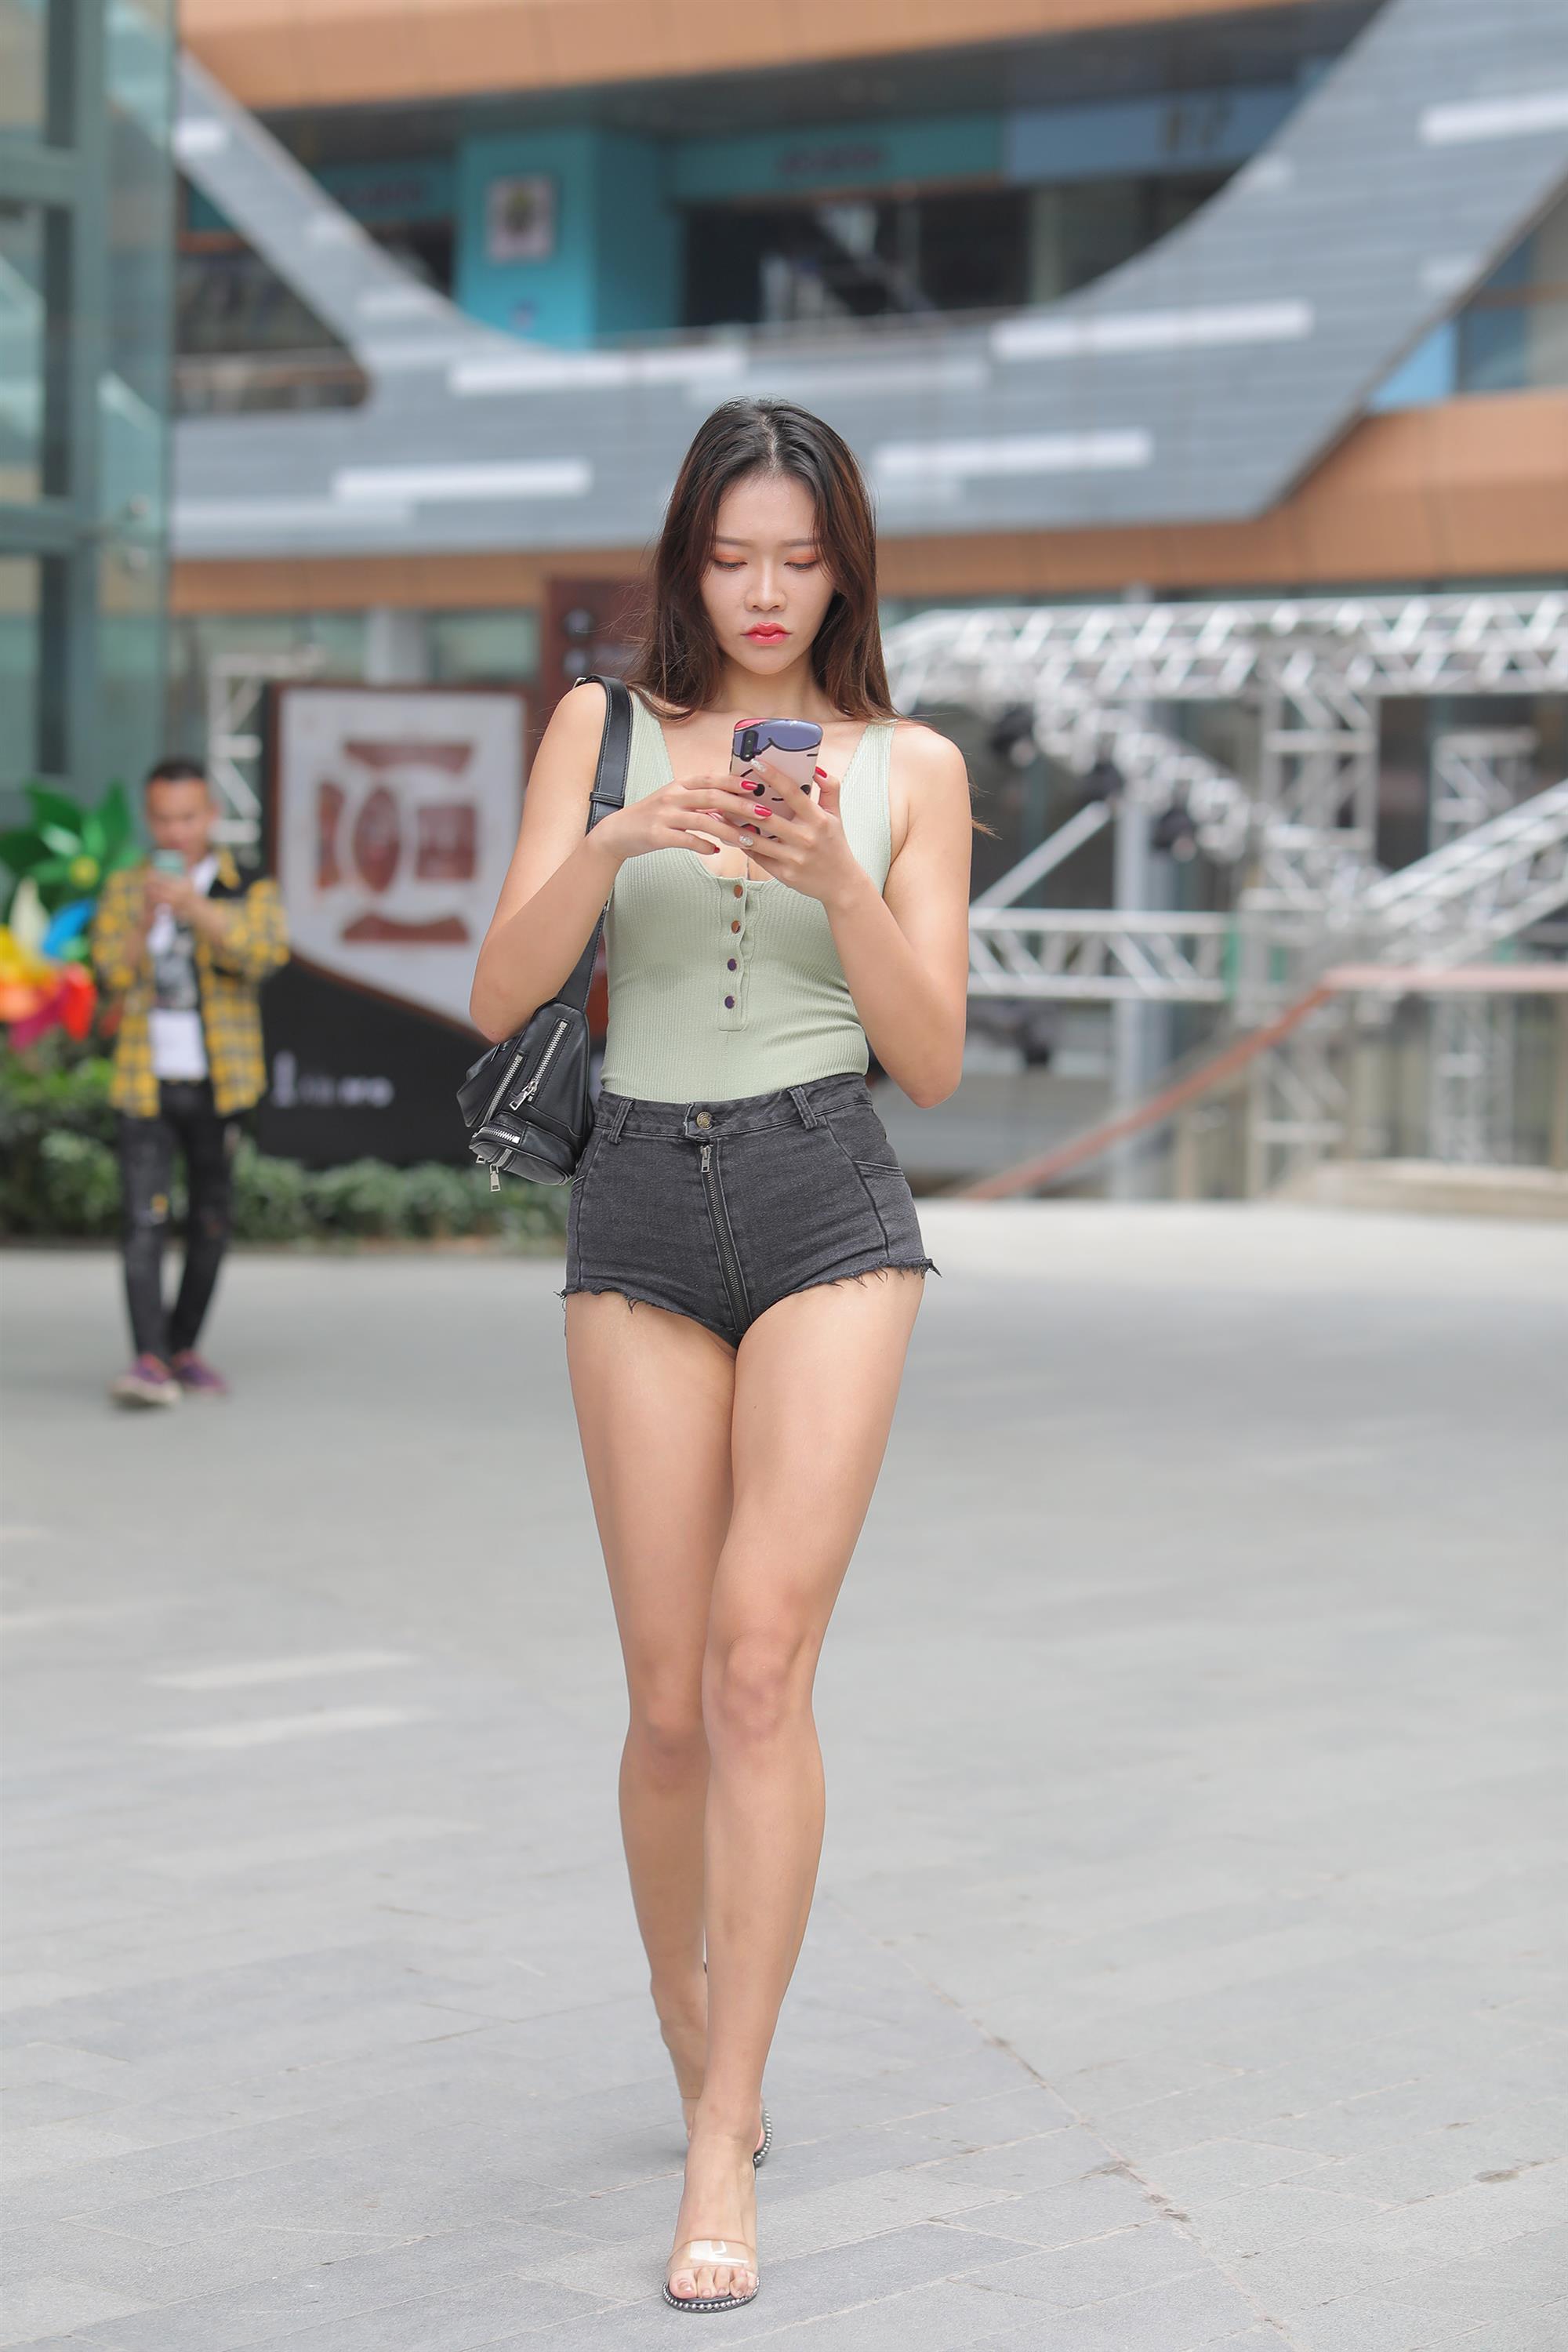 Street Long Legged Hot Girl - 224.jpg